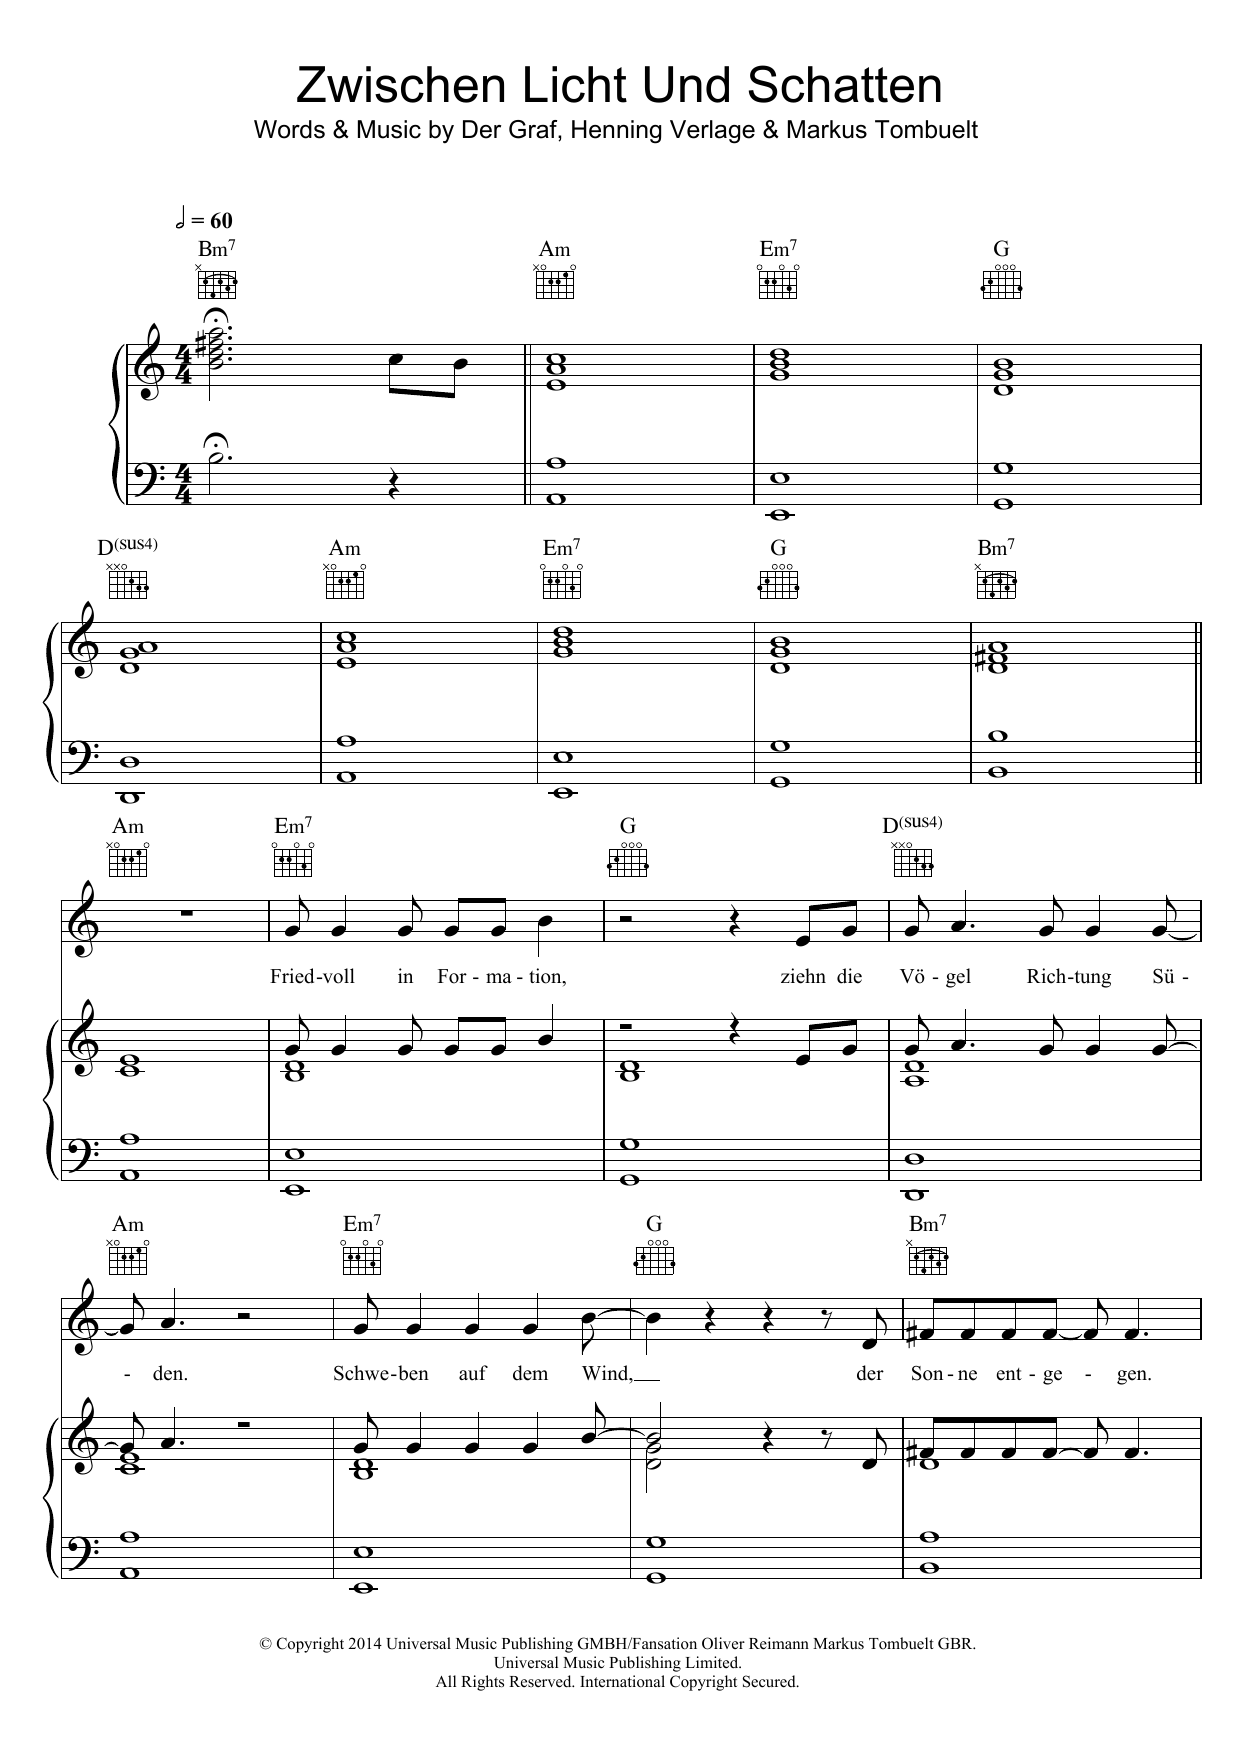 Unheilig Zwischen Licht und Schatten sheet music notes and chords arranged for Piano, Vocal & Guitar Chords